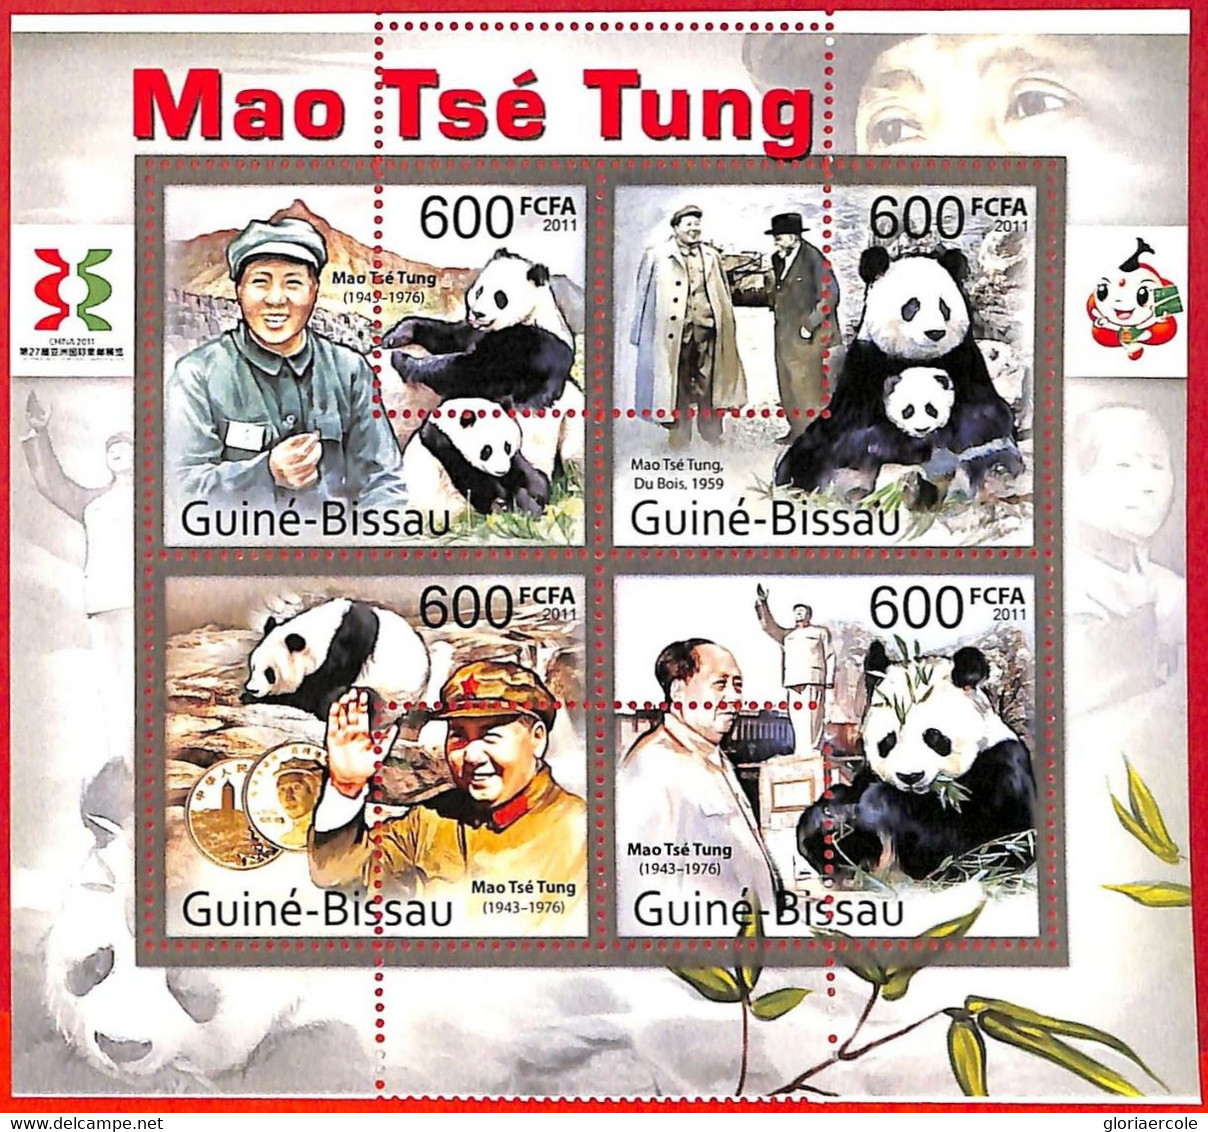 A5225 - GUINEA-BISSAU - Error, 2011, MISPERF, MINIATURE SHEET: Mao Tse Tung, Panda Bears - Mao Tse-Tung